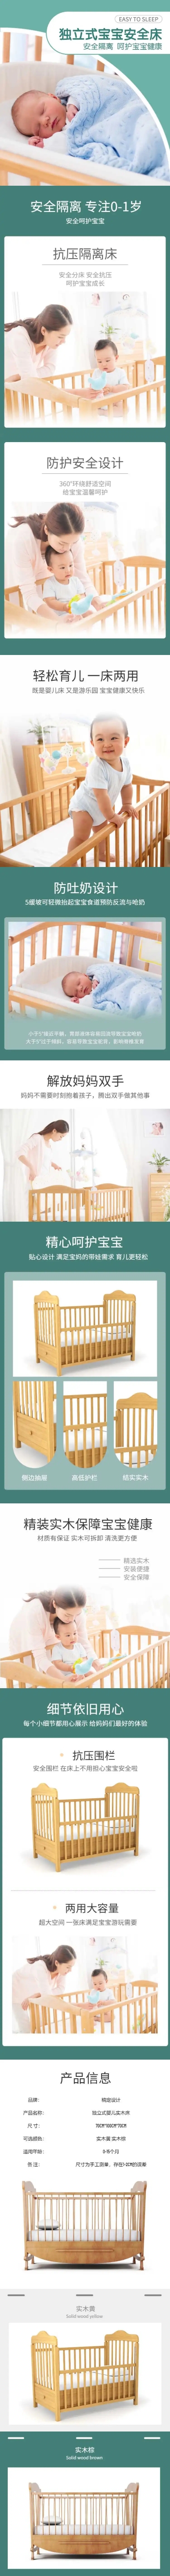 母婴婴儿用品宝宝床详情页预览效果